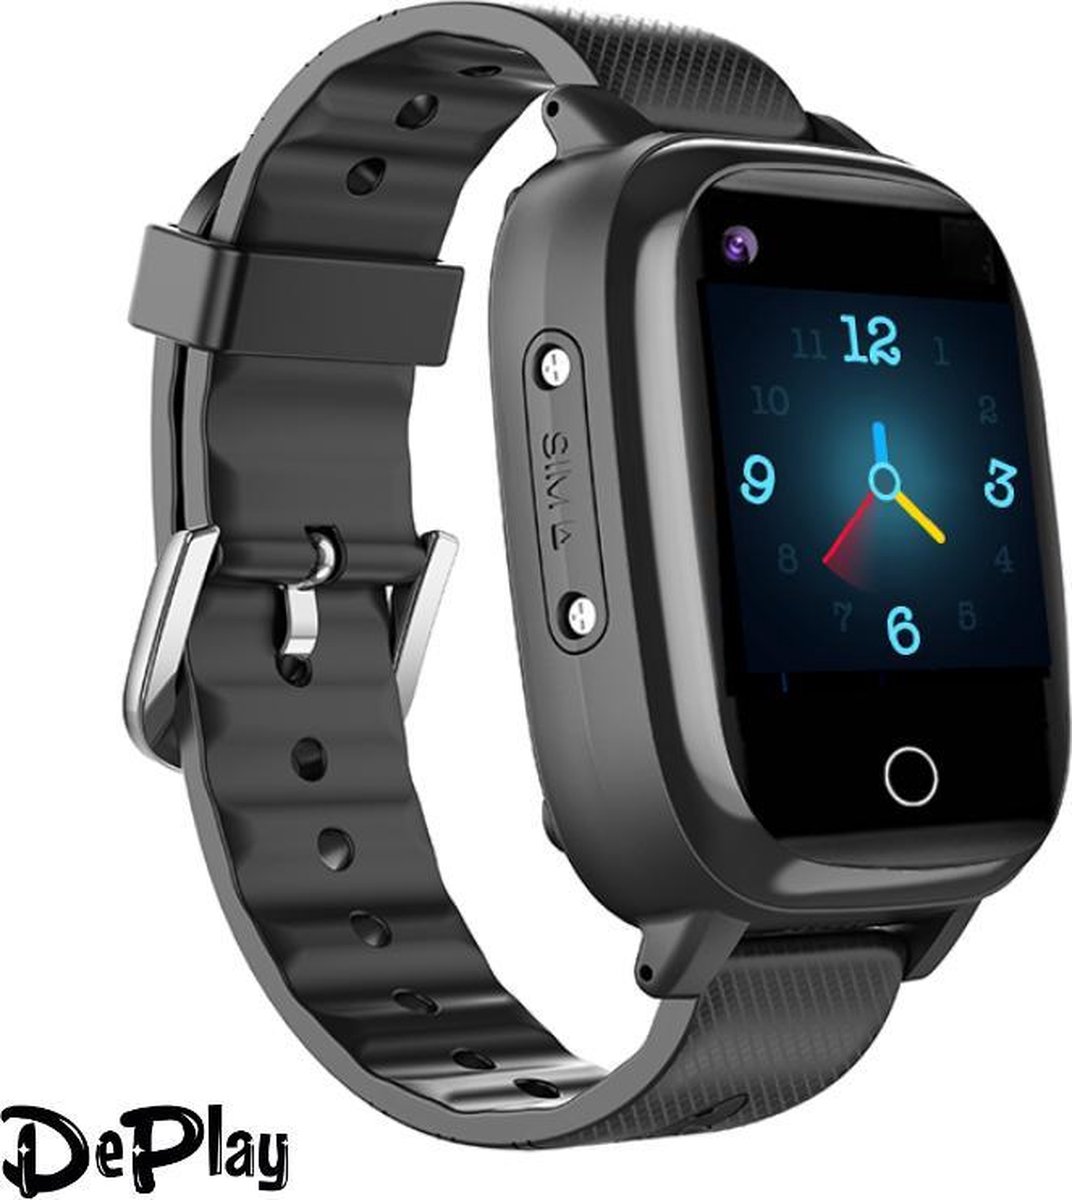 DePlay 4G KidsWatch - Smartwatch Kinderen - GPS Horloge Kind - GPS Tracker kind - Kinderhorloge - Smartwatch kids - Hartslagmeter - Bloeddrukmeter - Thermometer - HD Videobellen - Camera - (Spat)Waterproof - Niet Storen Functie - Zaklamp - Zwart